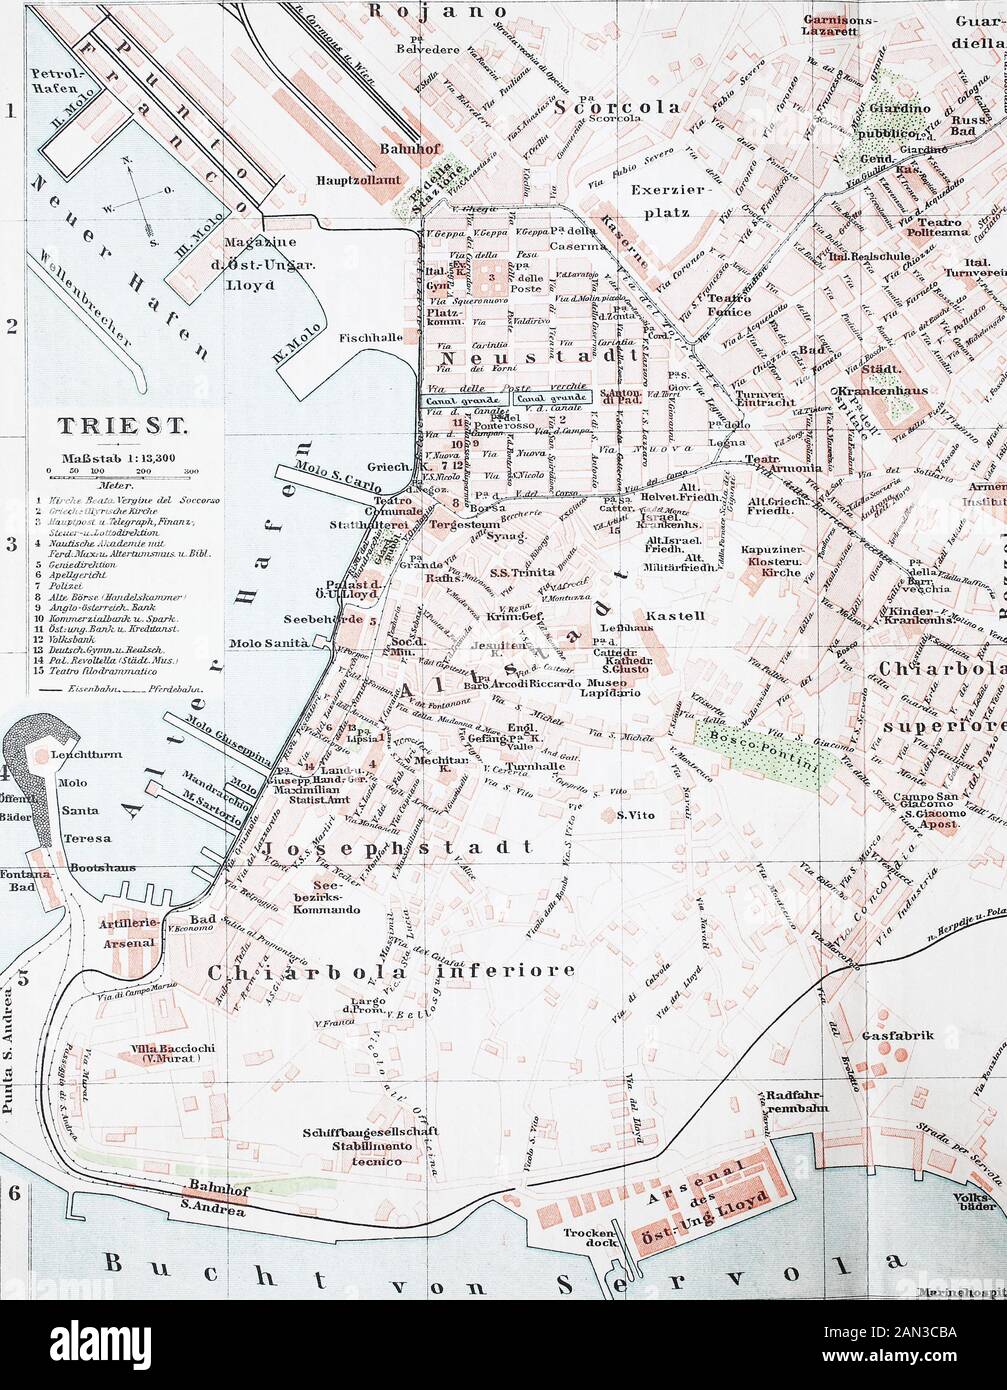 B14 Fiume und Pola Stadtplan Italien Historische Stadtkarte 1898: Triest 